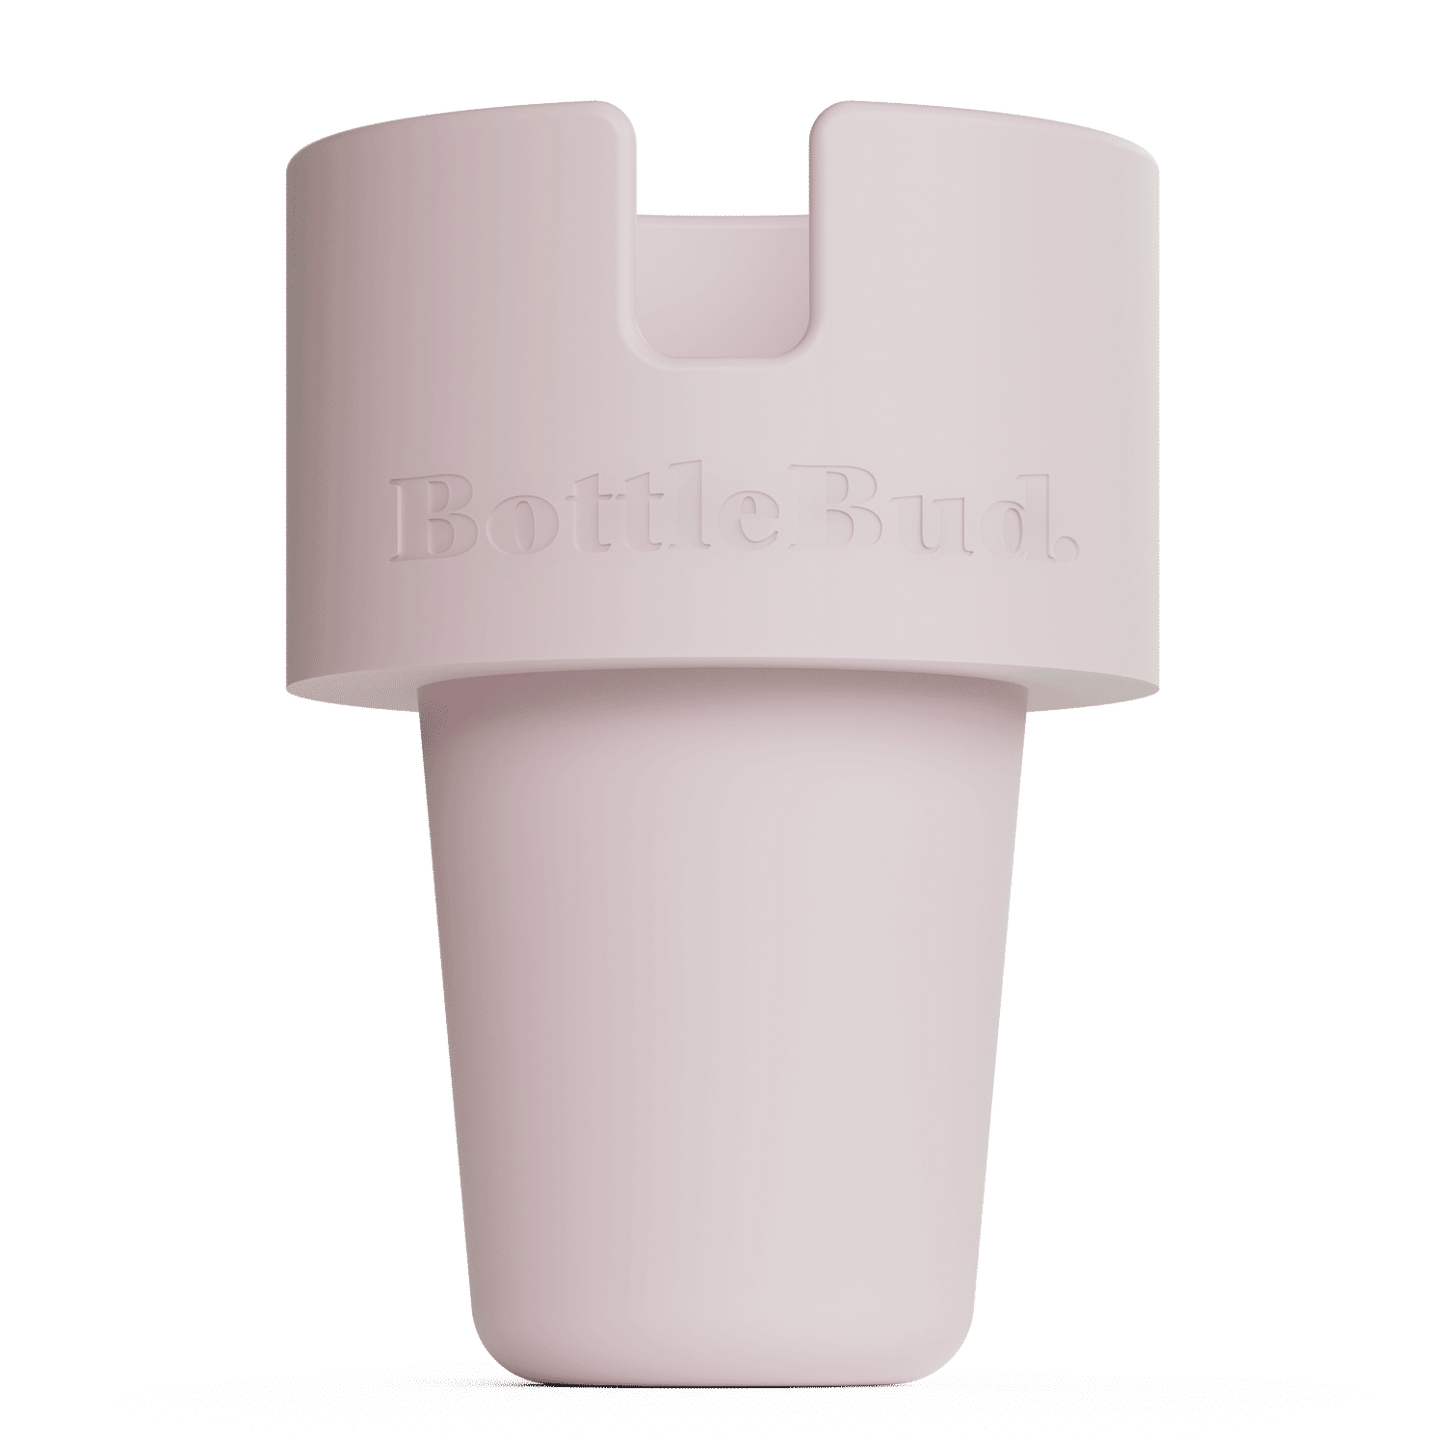 BottleBud Cup Holder Expanders